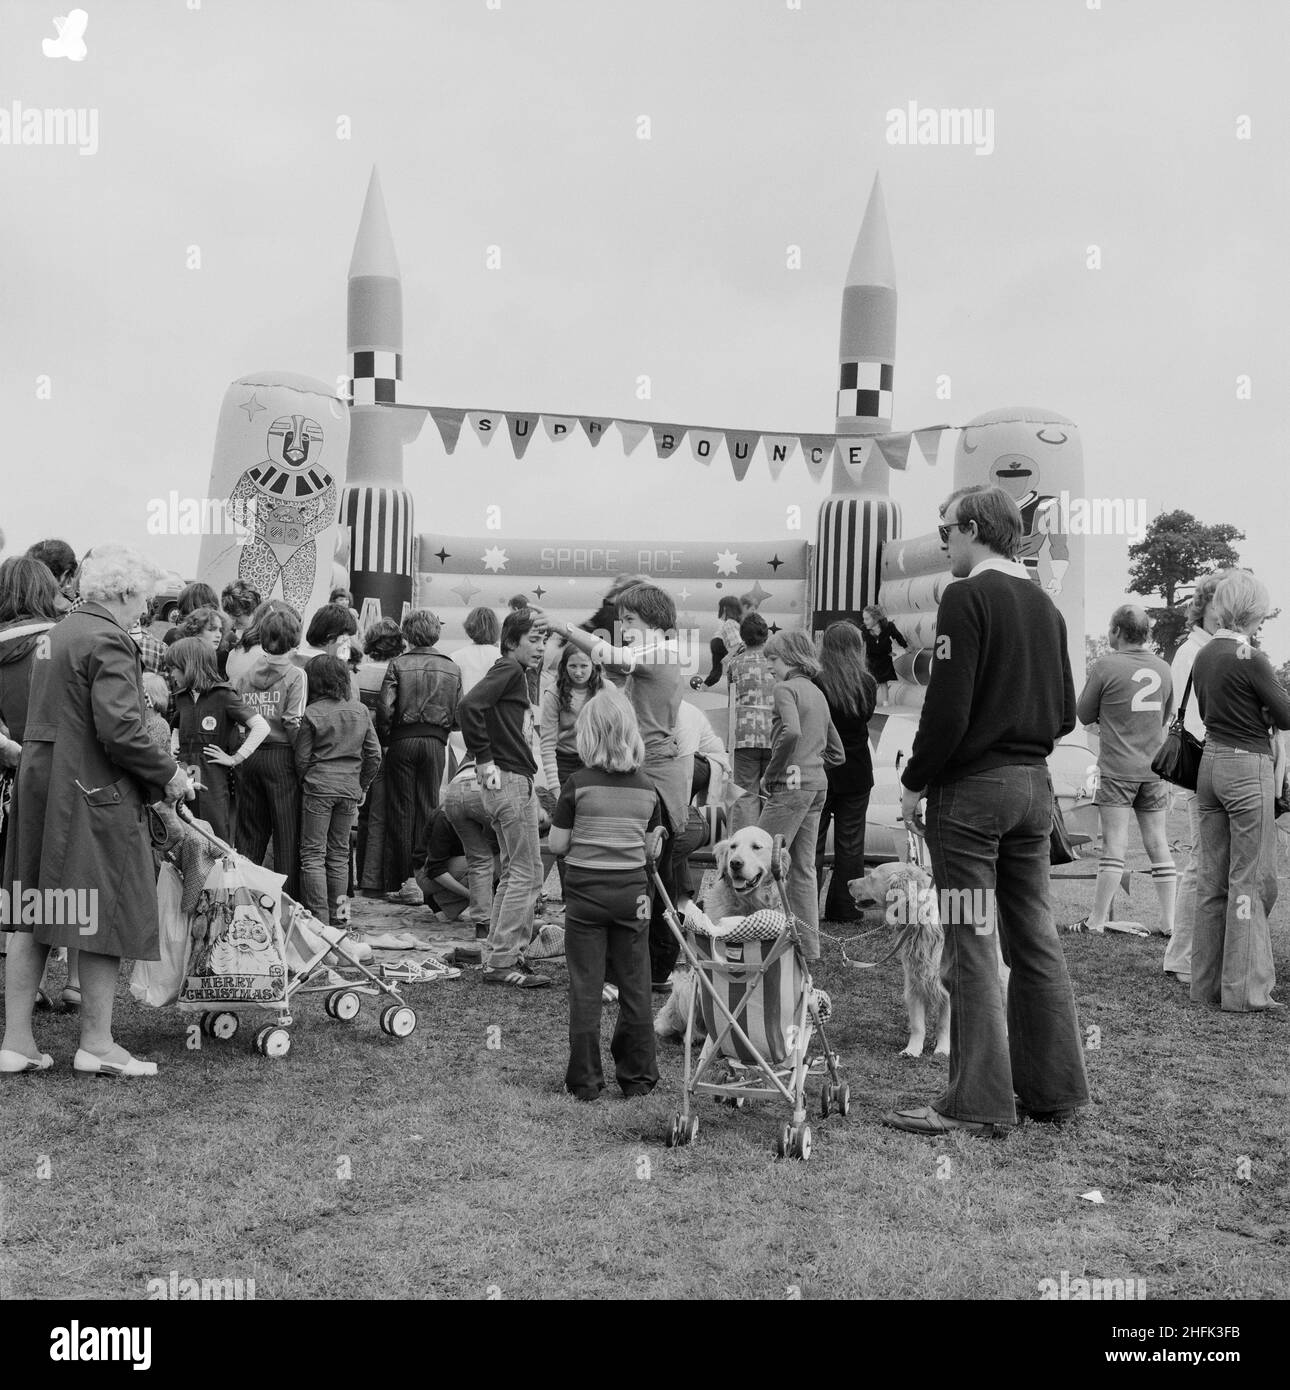 Laing Sports Ground, Rowley Lane, Elstree, Barnett, London, 16/06/1979. Beim jährlichen Laing Gala Day versammelten sich viele Menschen um eine Hüpfburg. Stockfoto